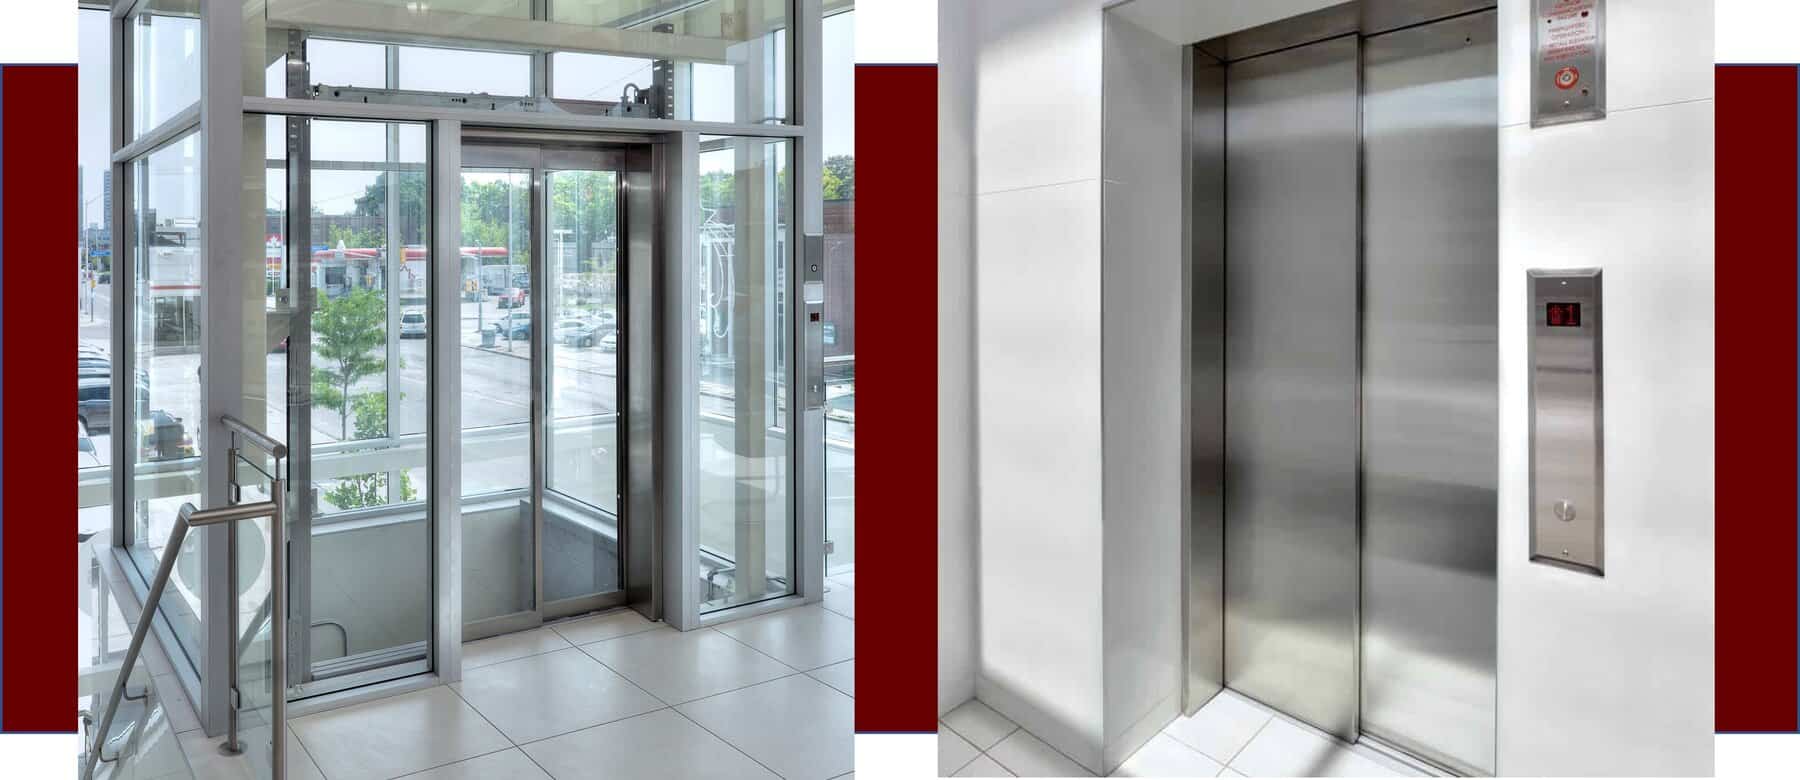 commercial lula elevators